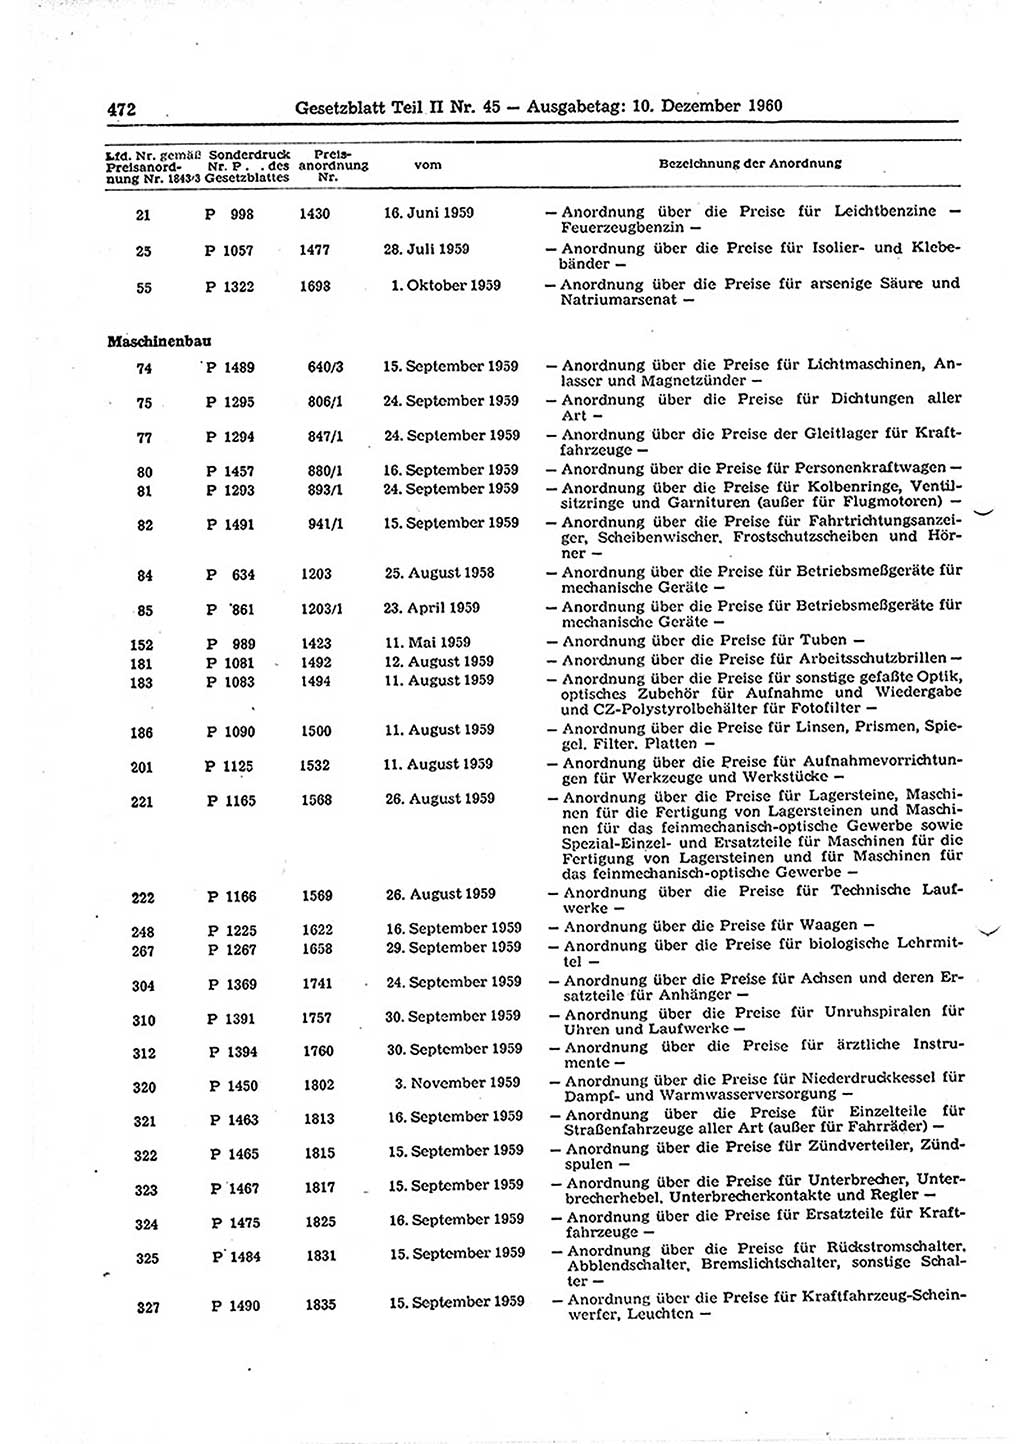 Gesetzblatt (GBl.) der Deutschen Demokratischen Republik (DDR) Teil ⅠⅠ 1960, Seite 472 (GBl. DDR ⅠⅠ 1960, S. 472)